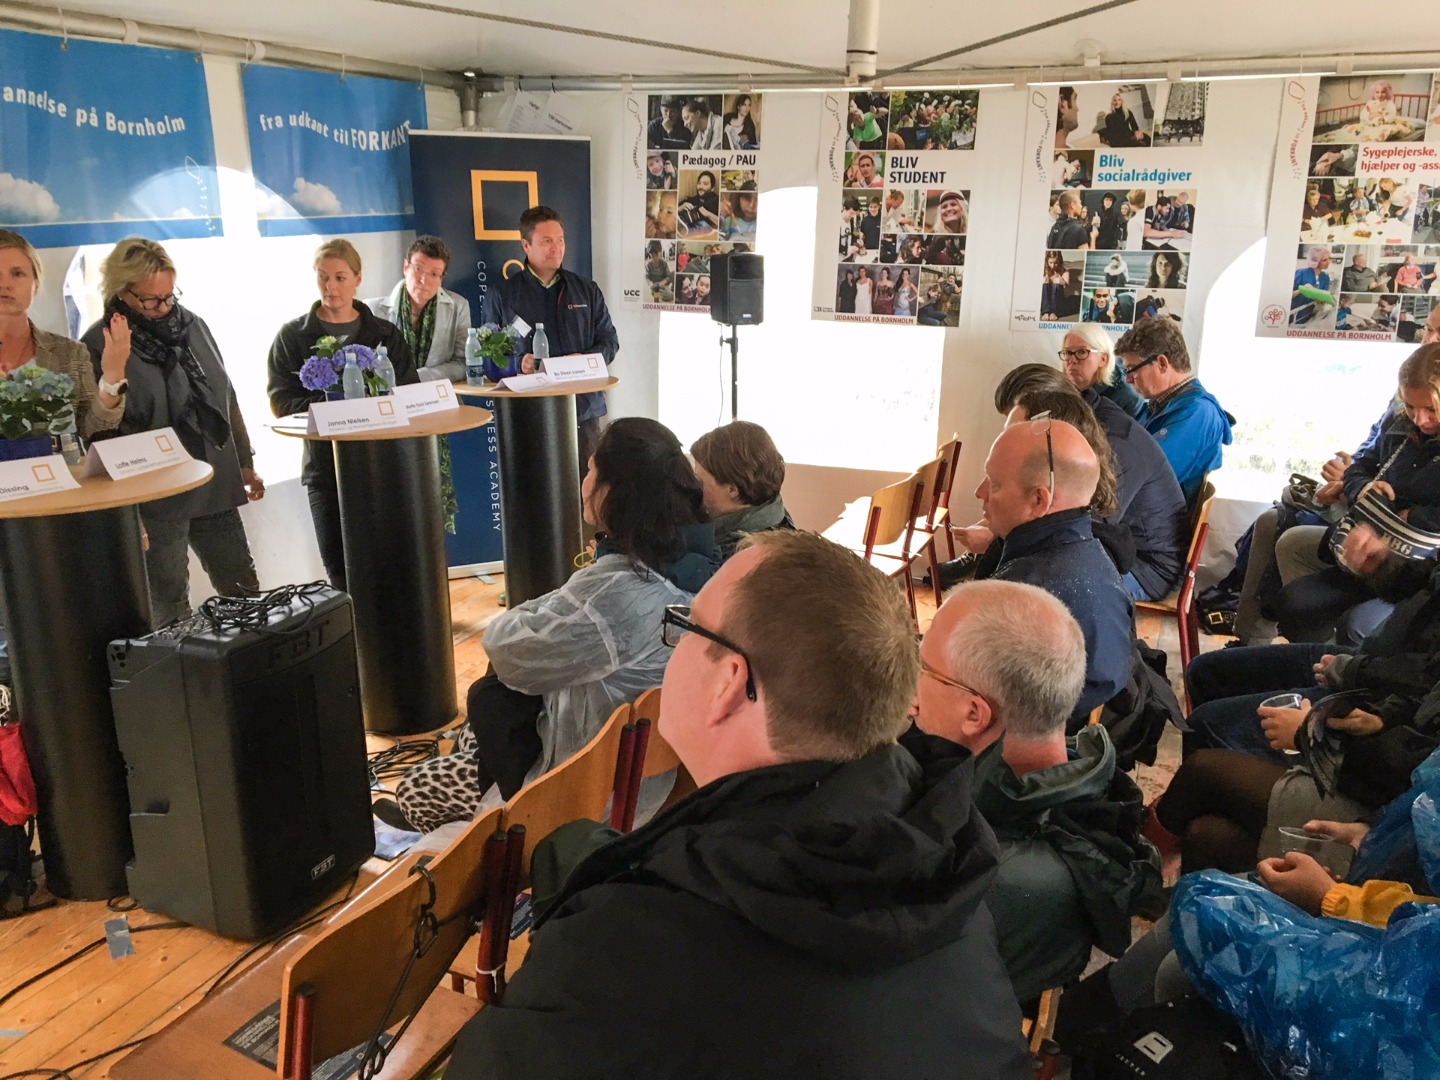 Cpbusiness deltager i debat om uddannelse på Bornholm ved Folkemødet på Bornholm 2016